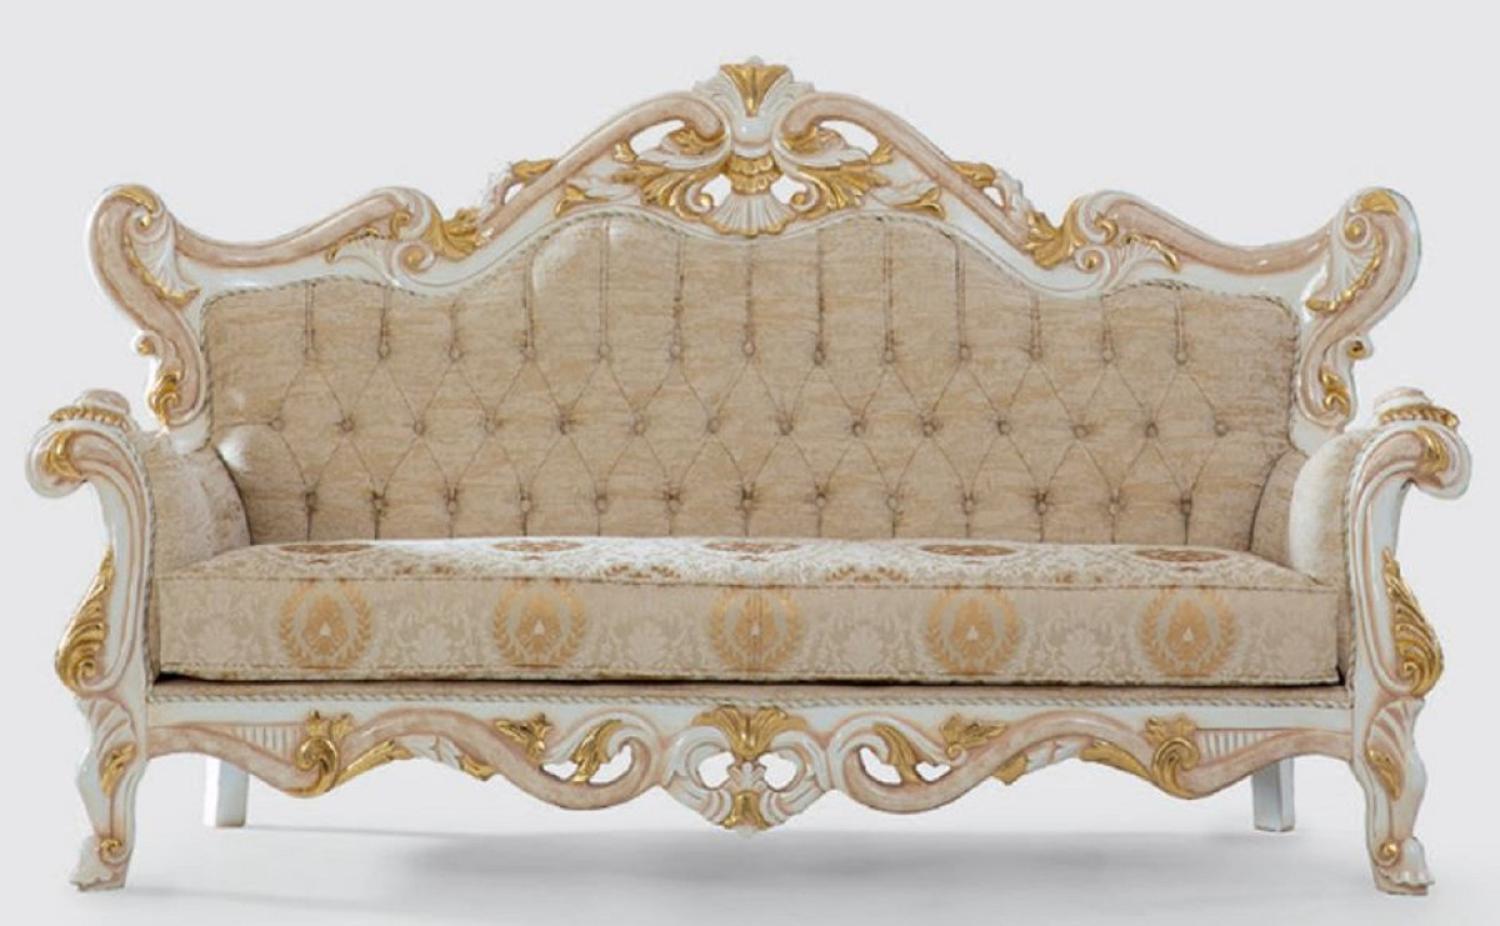 Casa Padrino Luxus Barock Sofa Beige / Weiß / Gold 225 x 90 x H. 128 cm - Handgefertigtes Wohnzimmer Sofa mit elegantem Muster - Barock Wohnzimmer Möbel - Edel & Prunkvoll Bild 1